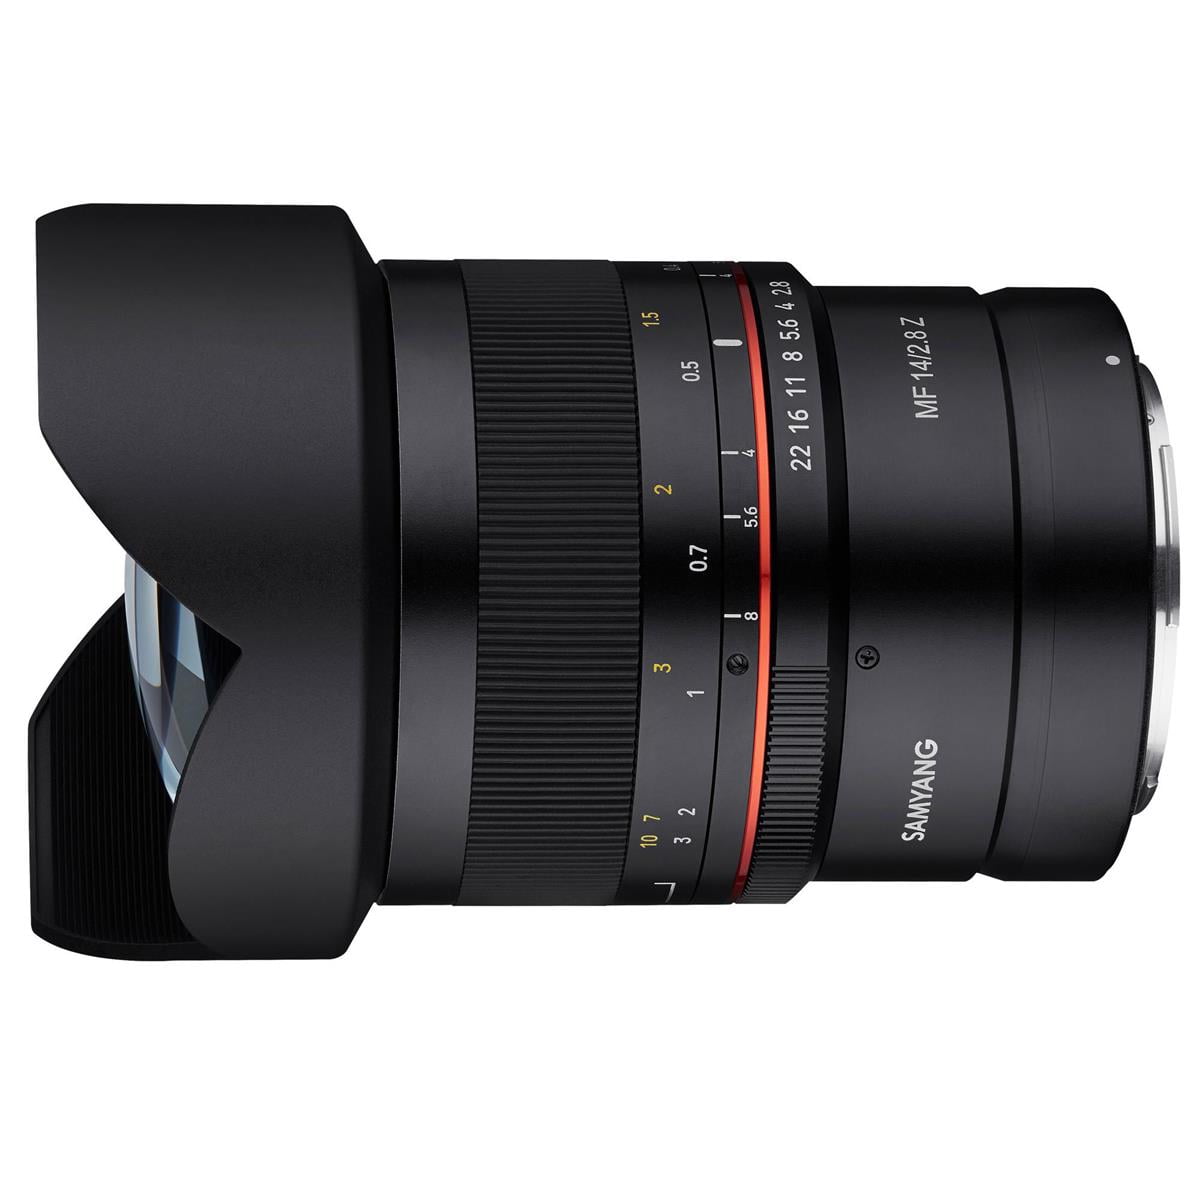 Samyang 14mm F2.8 UMC Super Wide Angle, Manual Focus Lens for Nikon Z